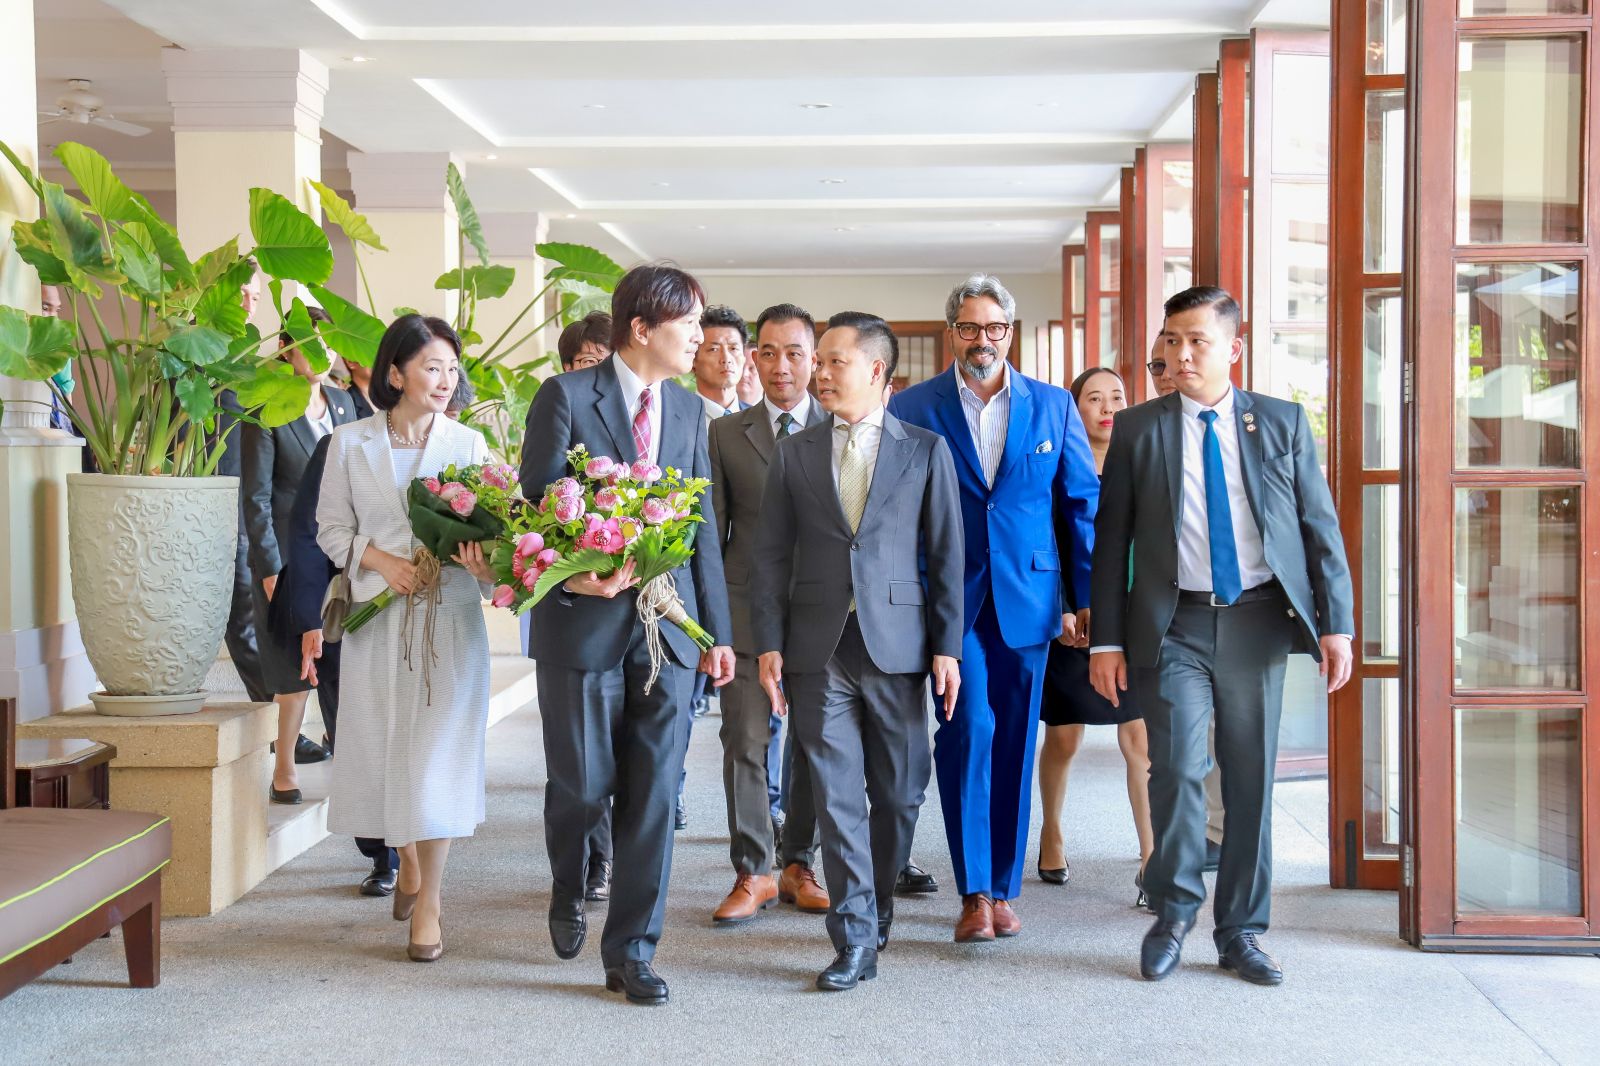 Khu nghỉ dưỡng Furama Resort Đà Nẵng vinh dự được đón Hoàng Thái tử Nhật Bản Akishino cùng công nương Kiko chọn làm nơi ở trong chuyến thăm thành phố Đà Nẵng.